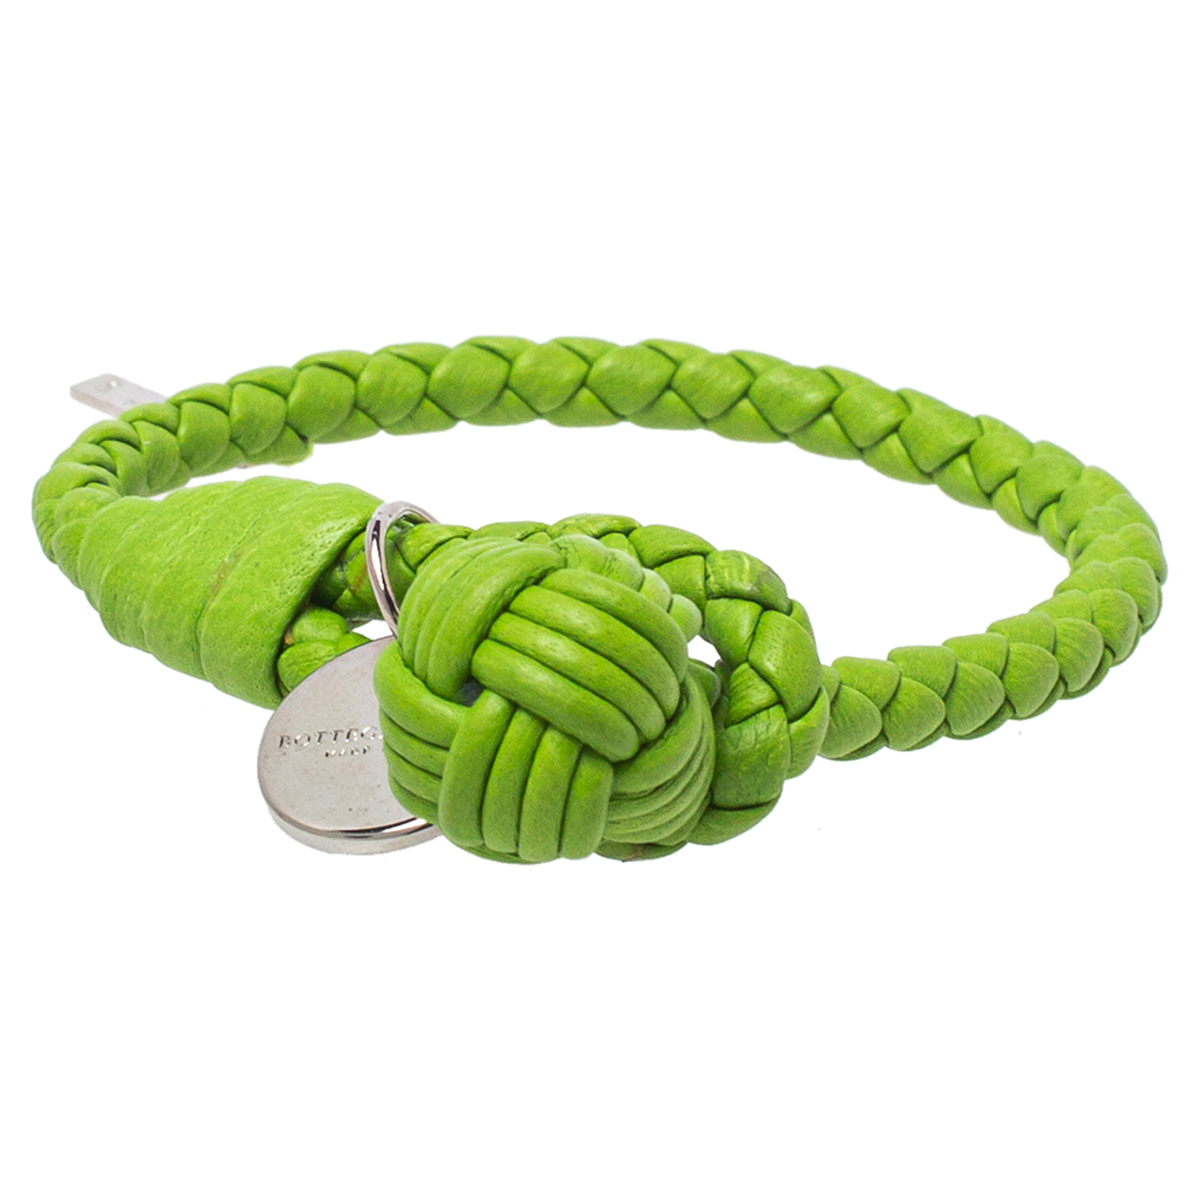 Bottega Veneta Green Intrecciato Nappa Leather Knot Bracelet S